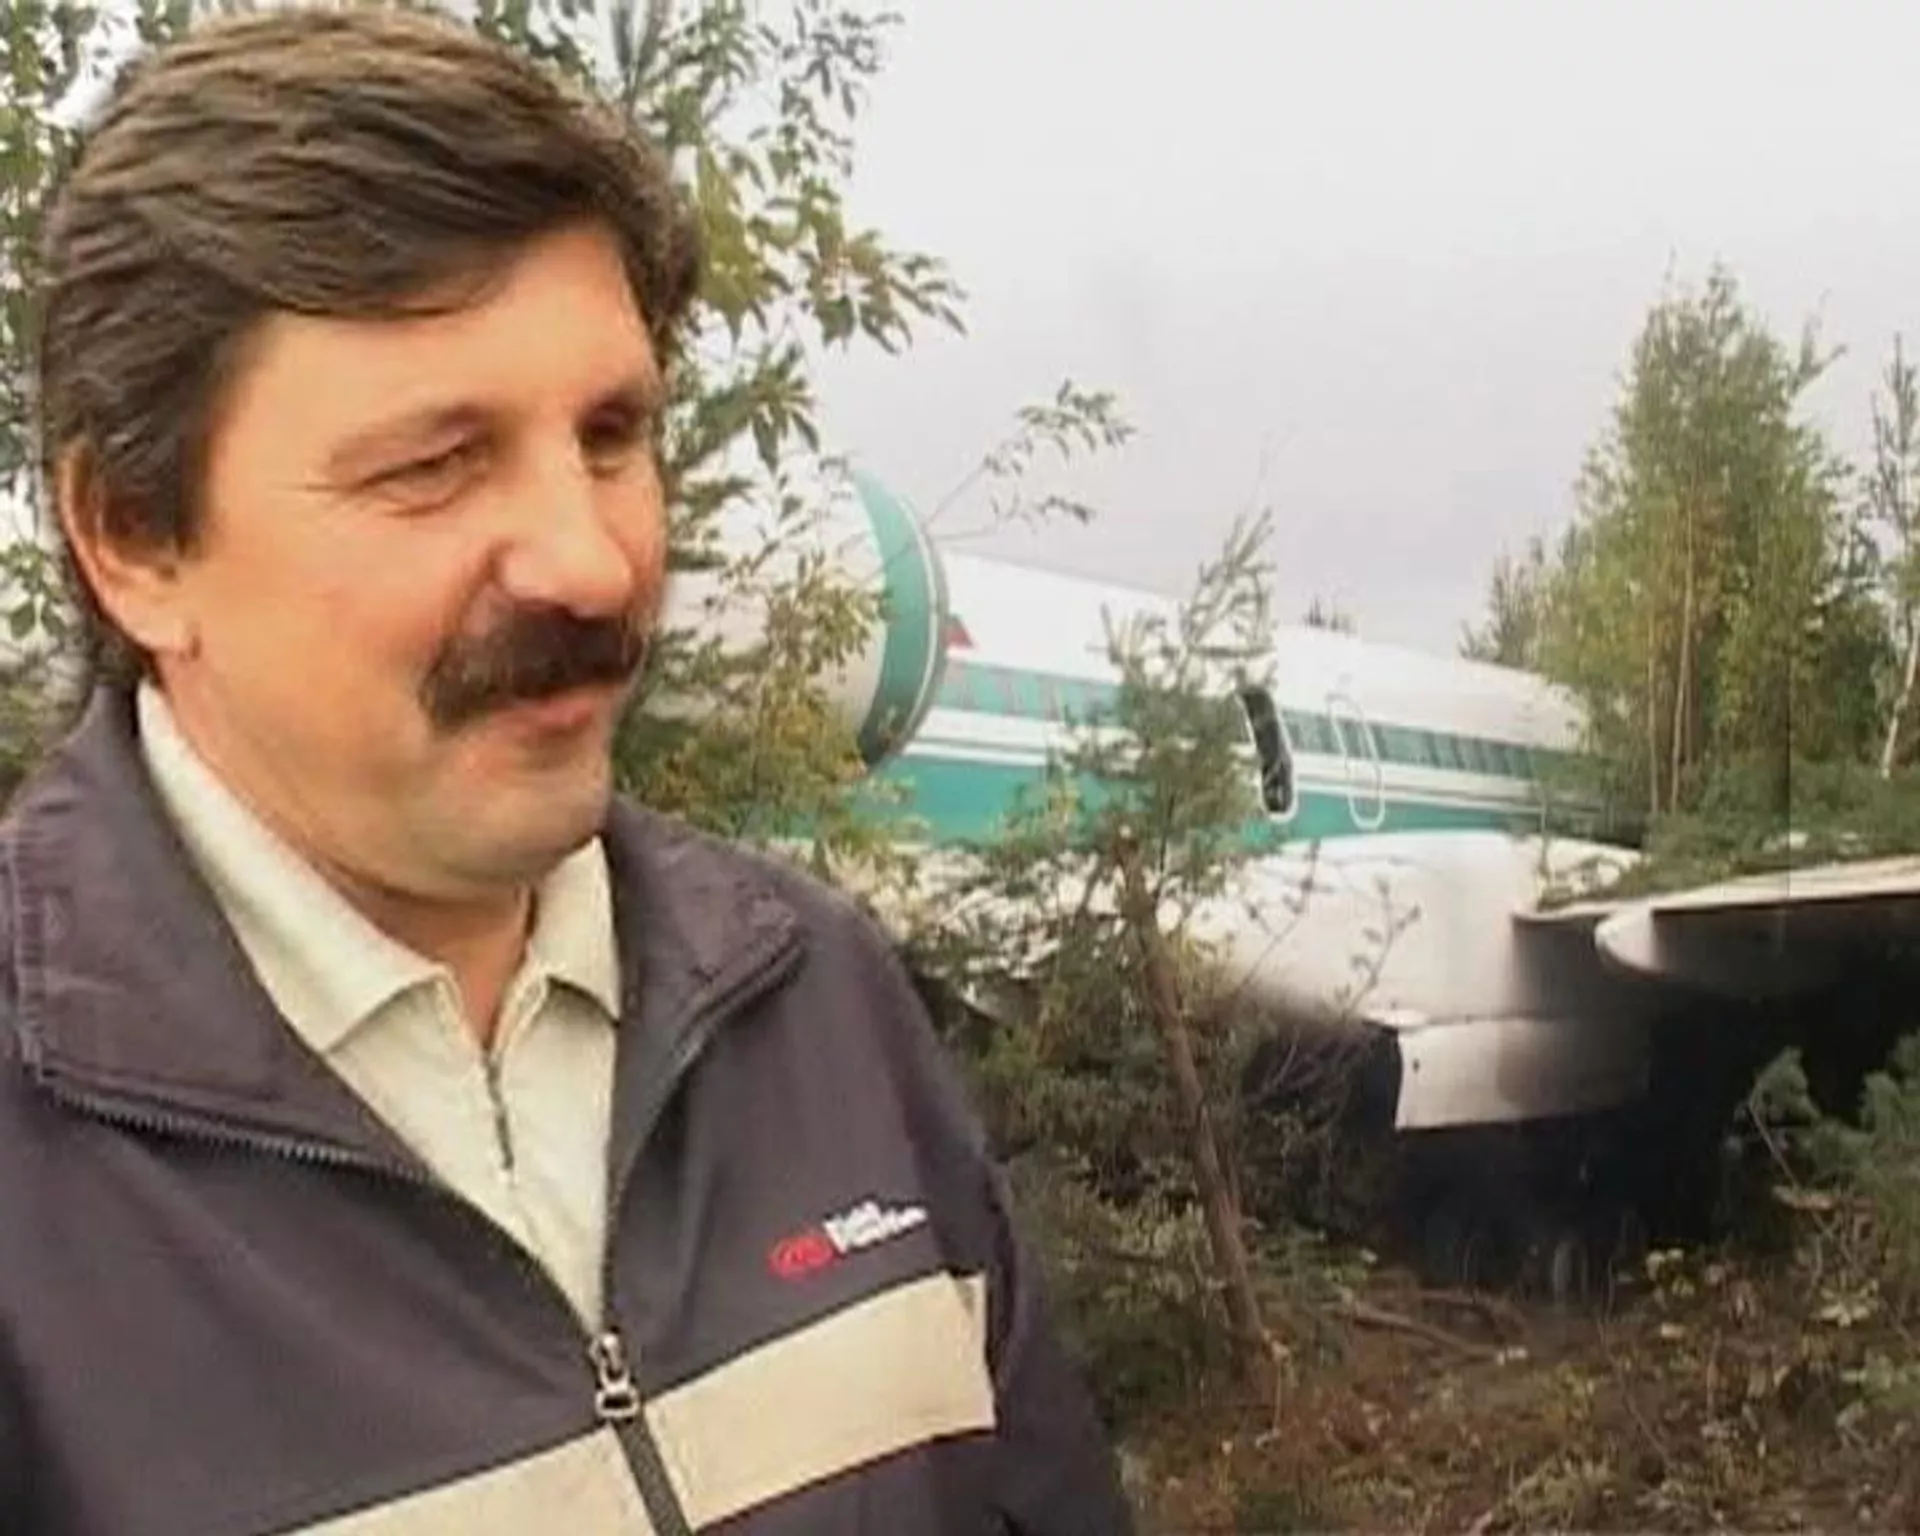 Пассажир рассказал об аварийной посадке Ту-154 в Ижме - РИА Новости, 1920, 08.09.2010